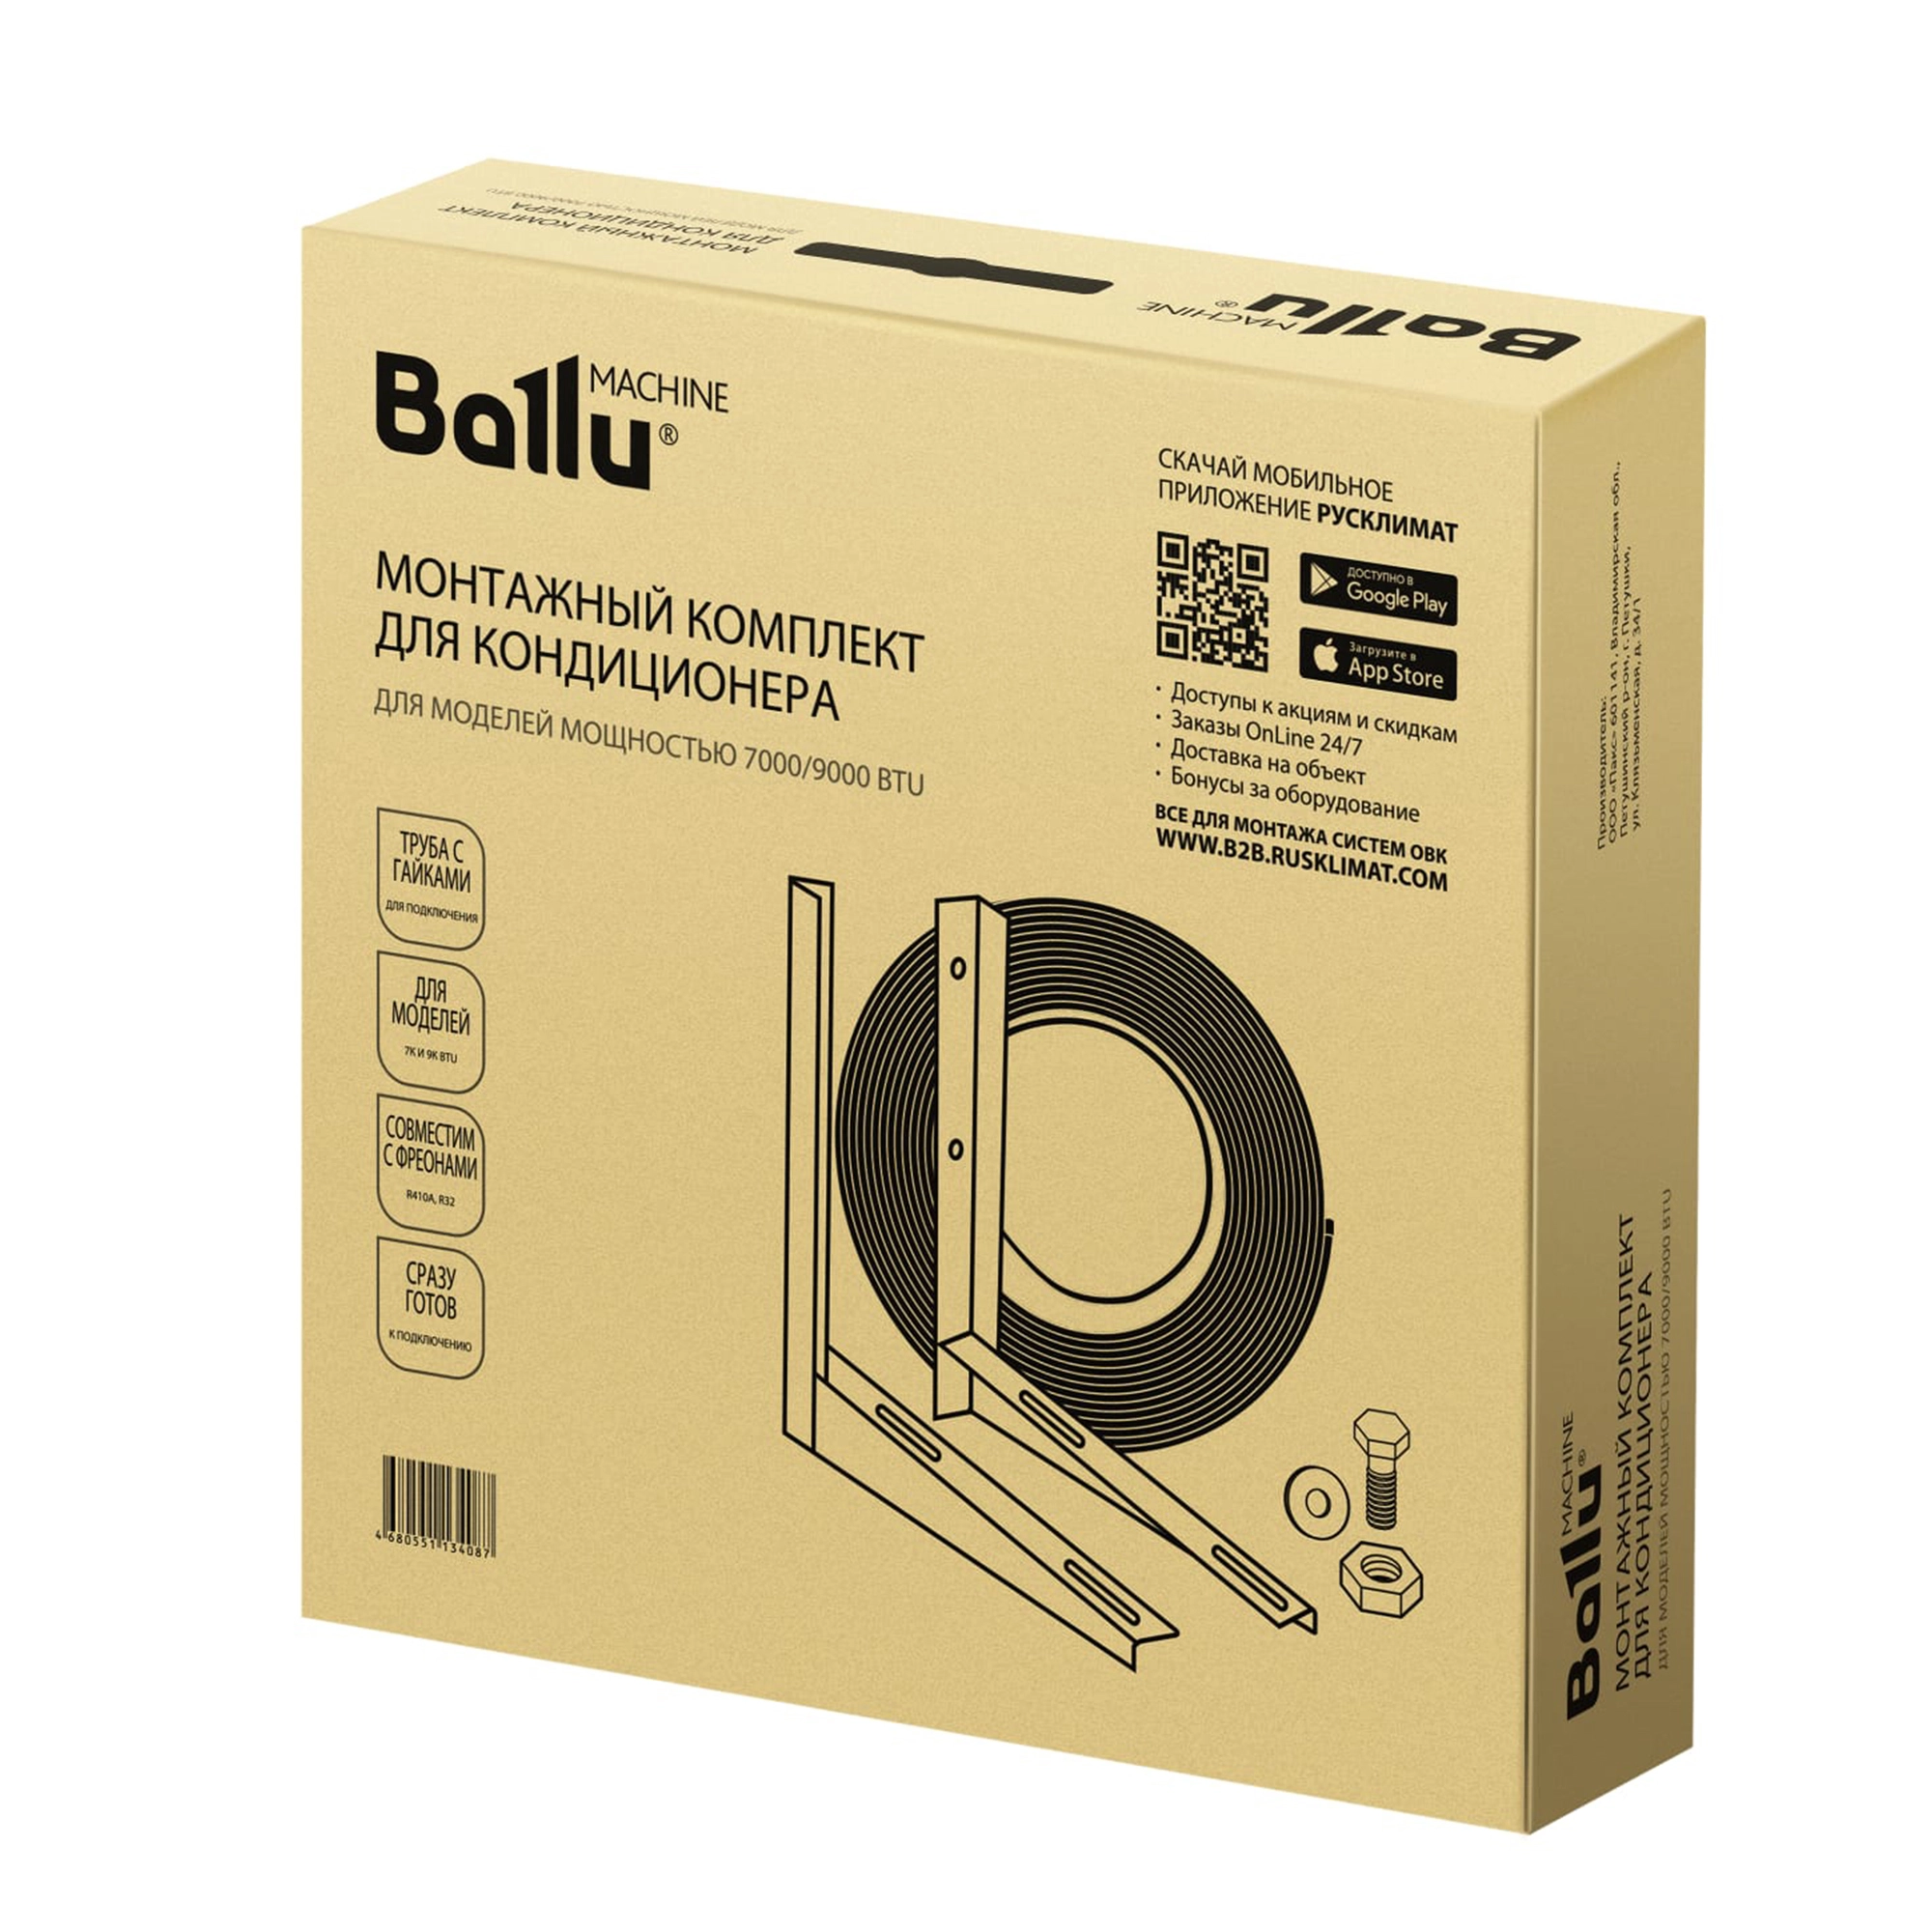 Монтажный комплект для установка кондиционер Ballu Machine от магазина ЛесКонПром.ру